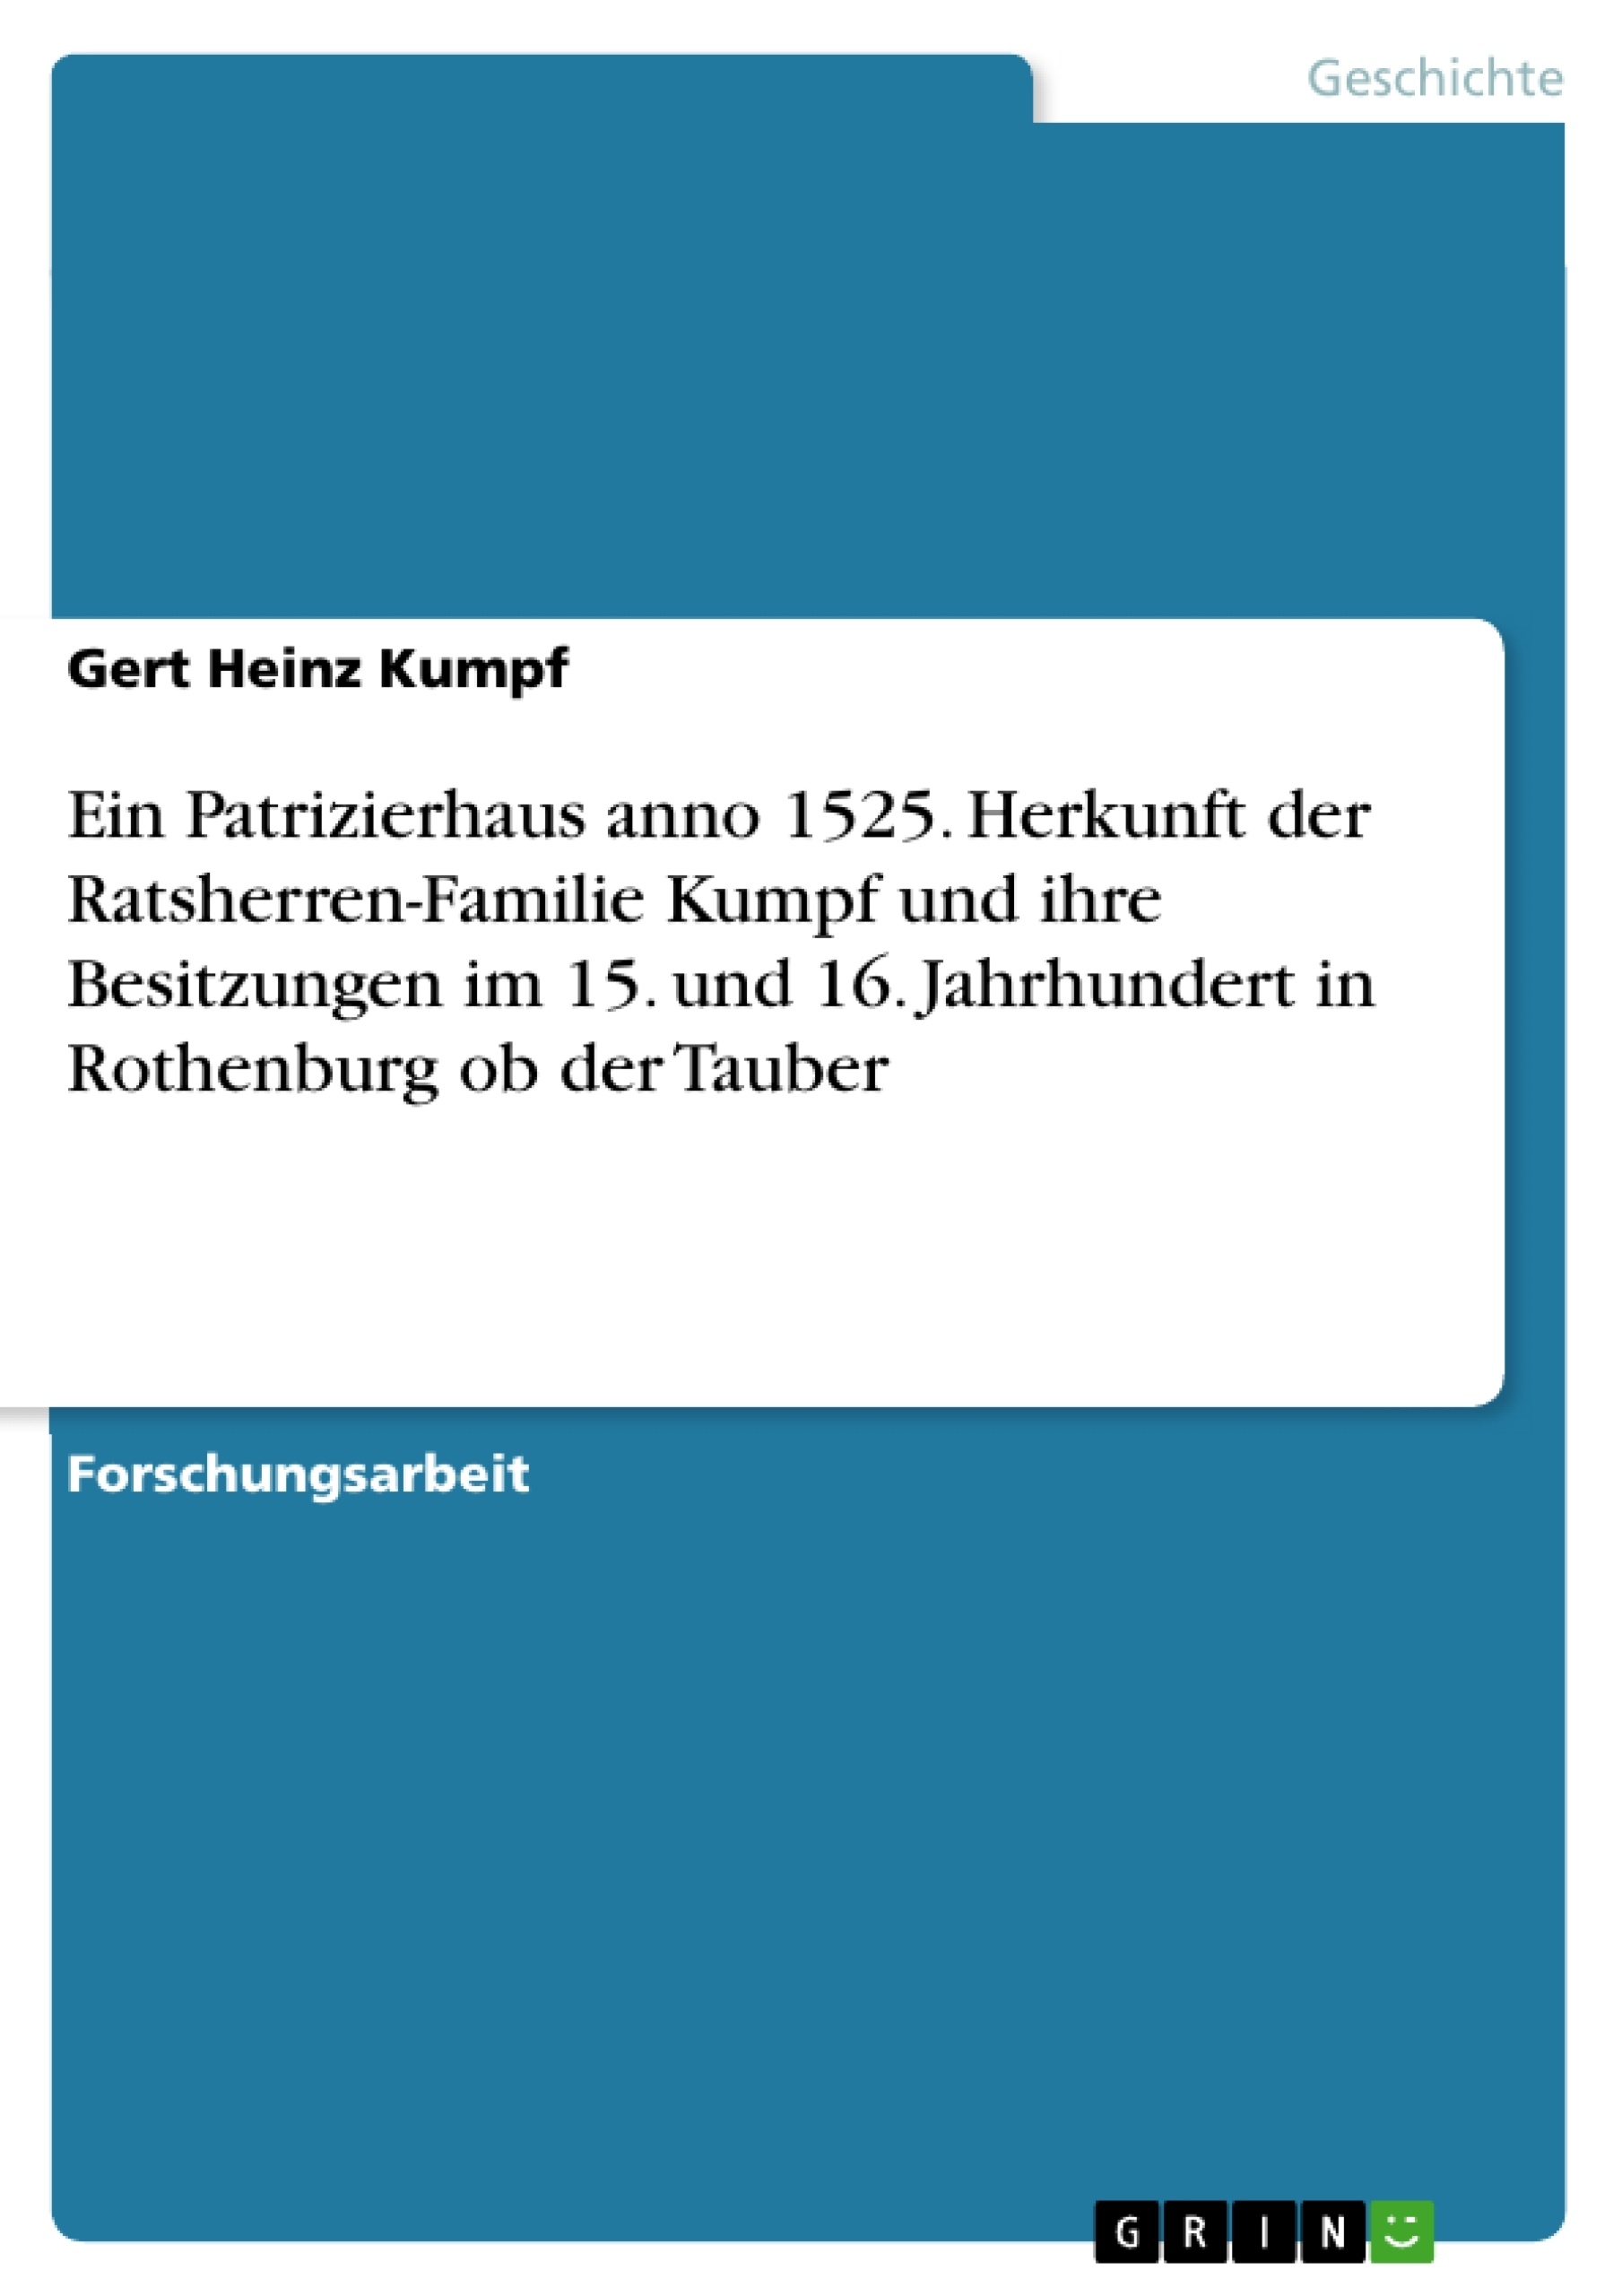 Title: Ein Patrizierhaus anno 1525. Herkunft der Ratsherren-Familie Kumpf und ihre Besitzungen im 15. und 16. Jahrhundert in Rothenburg ob der Tauber